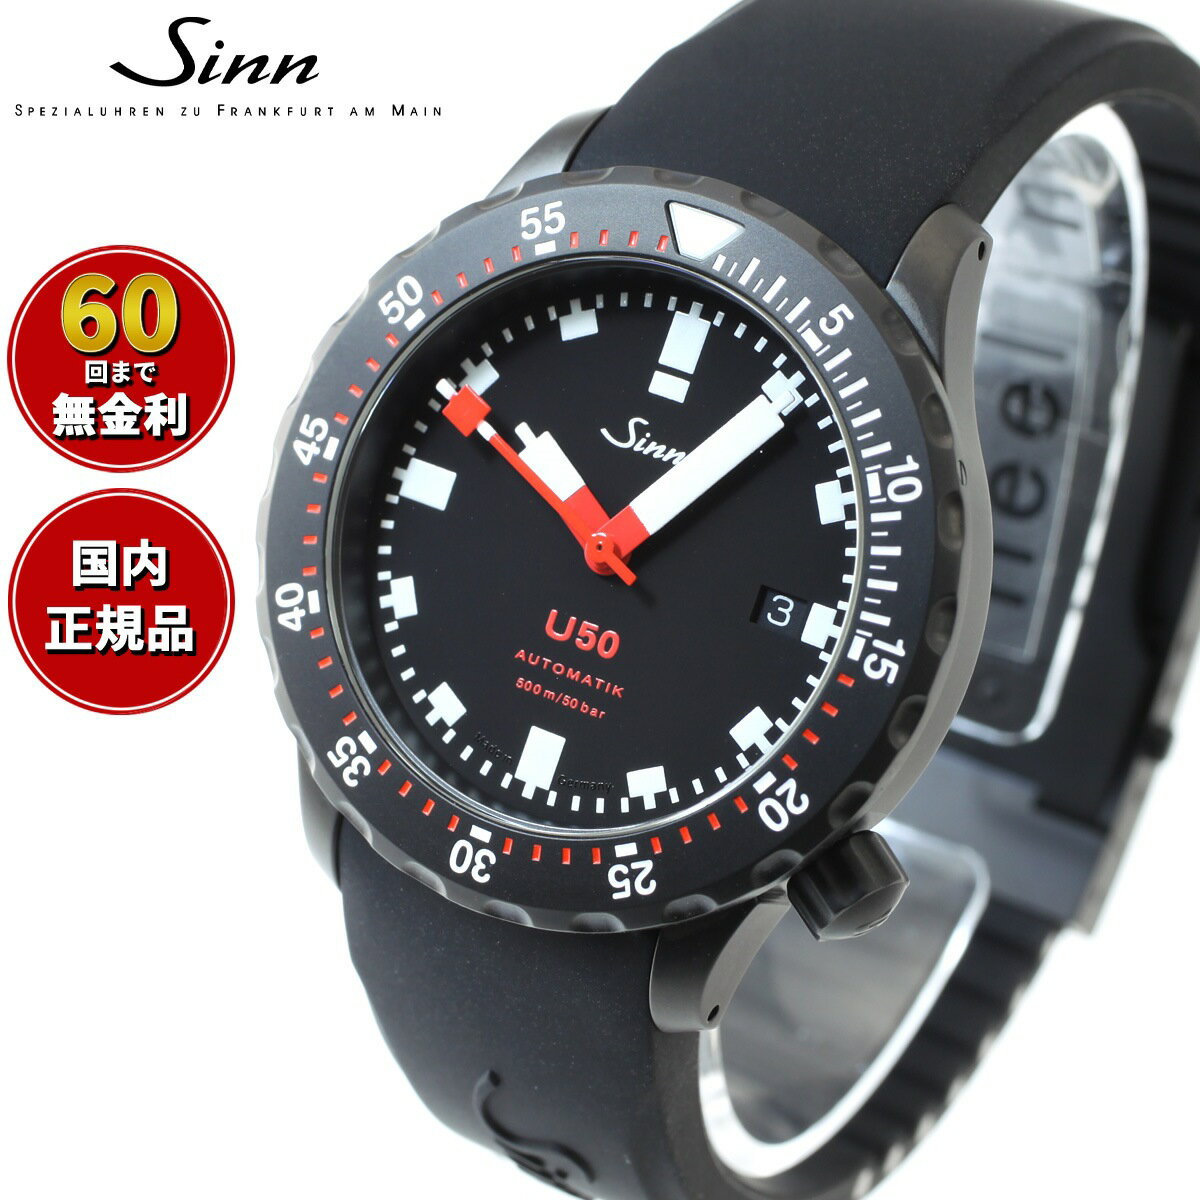 ジン 【選べるノベルティー付き！】【60回分割手数料無料！】Sinn ジン U50.S 自動巻き 腕時計 メンズ Diving Watches ダイバーズウォッチ シリコンストラップ ドイツ製